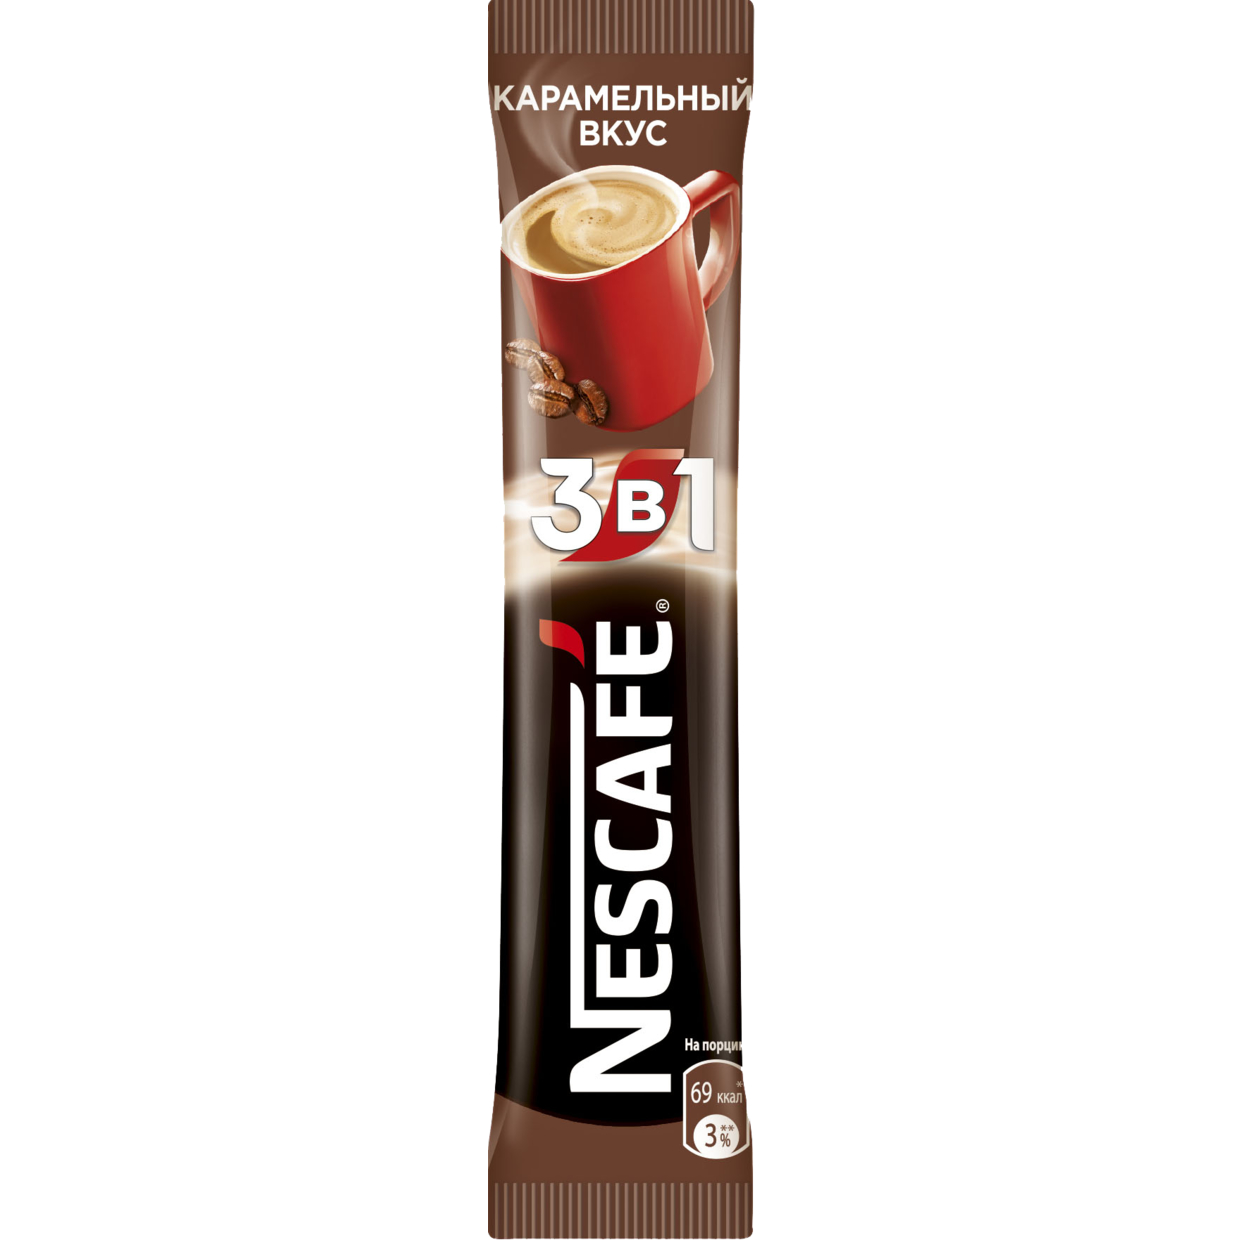 Напиток кофейный растворимый NESCAFE 3 в 1 Карамельный вкус, 16 г